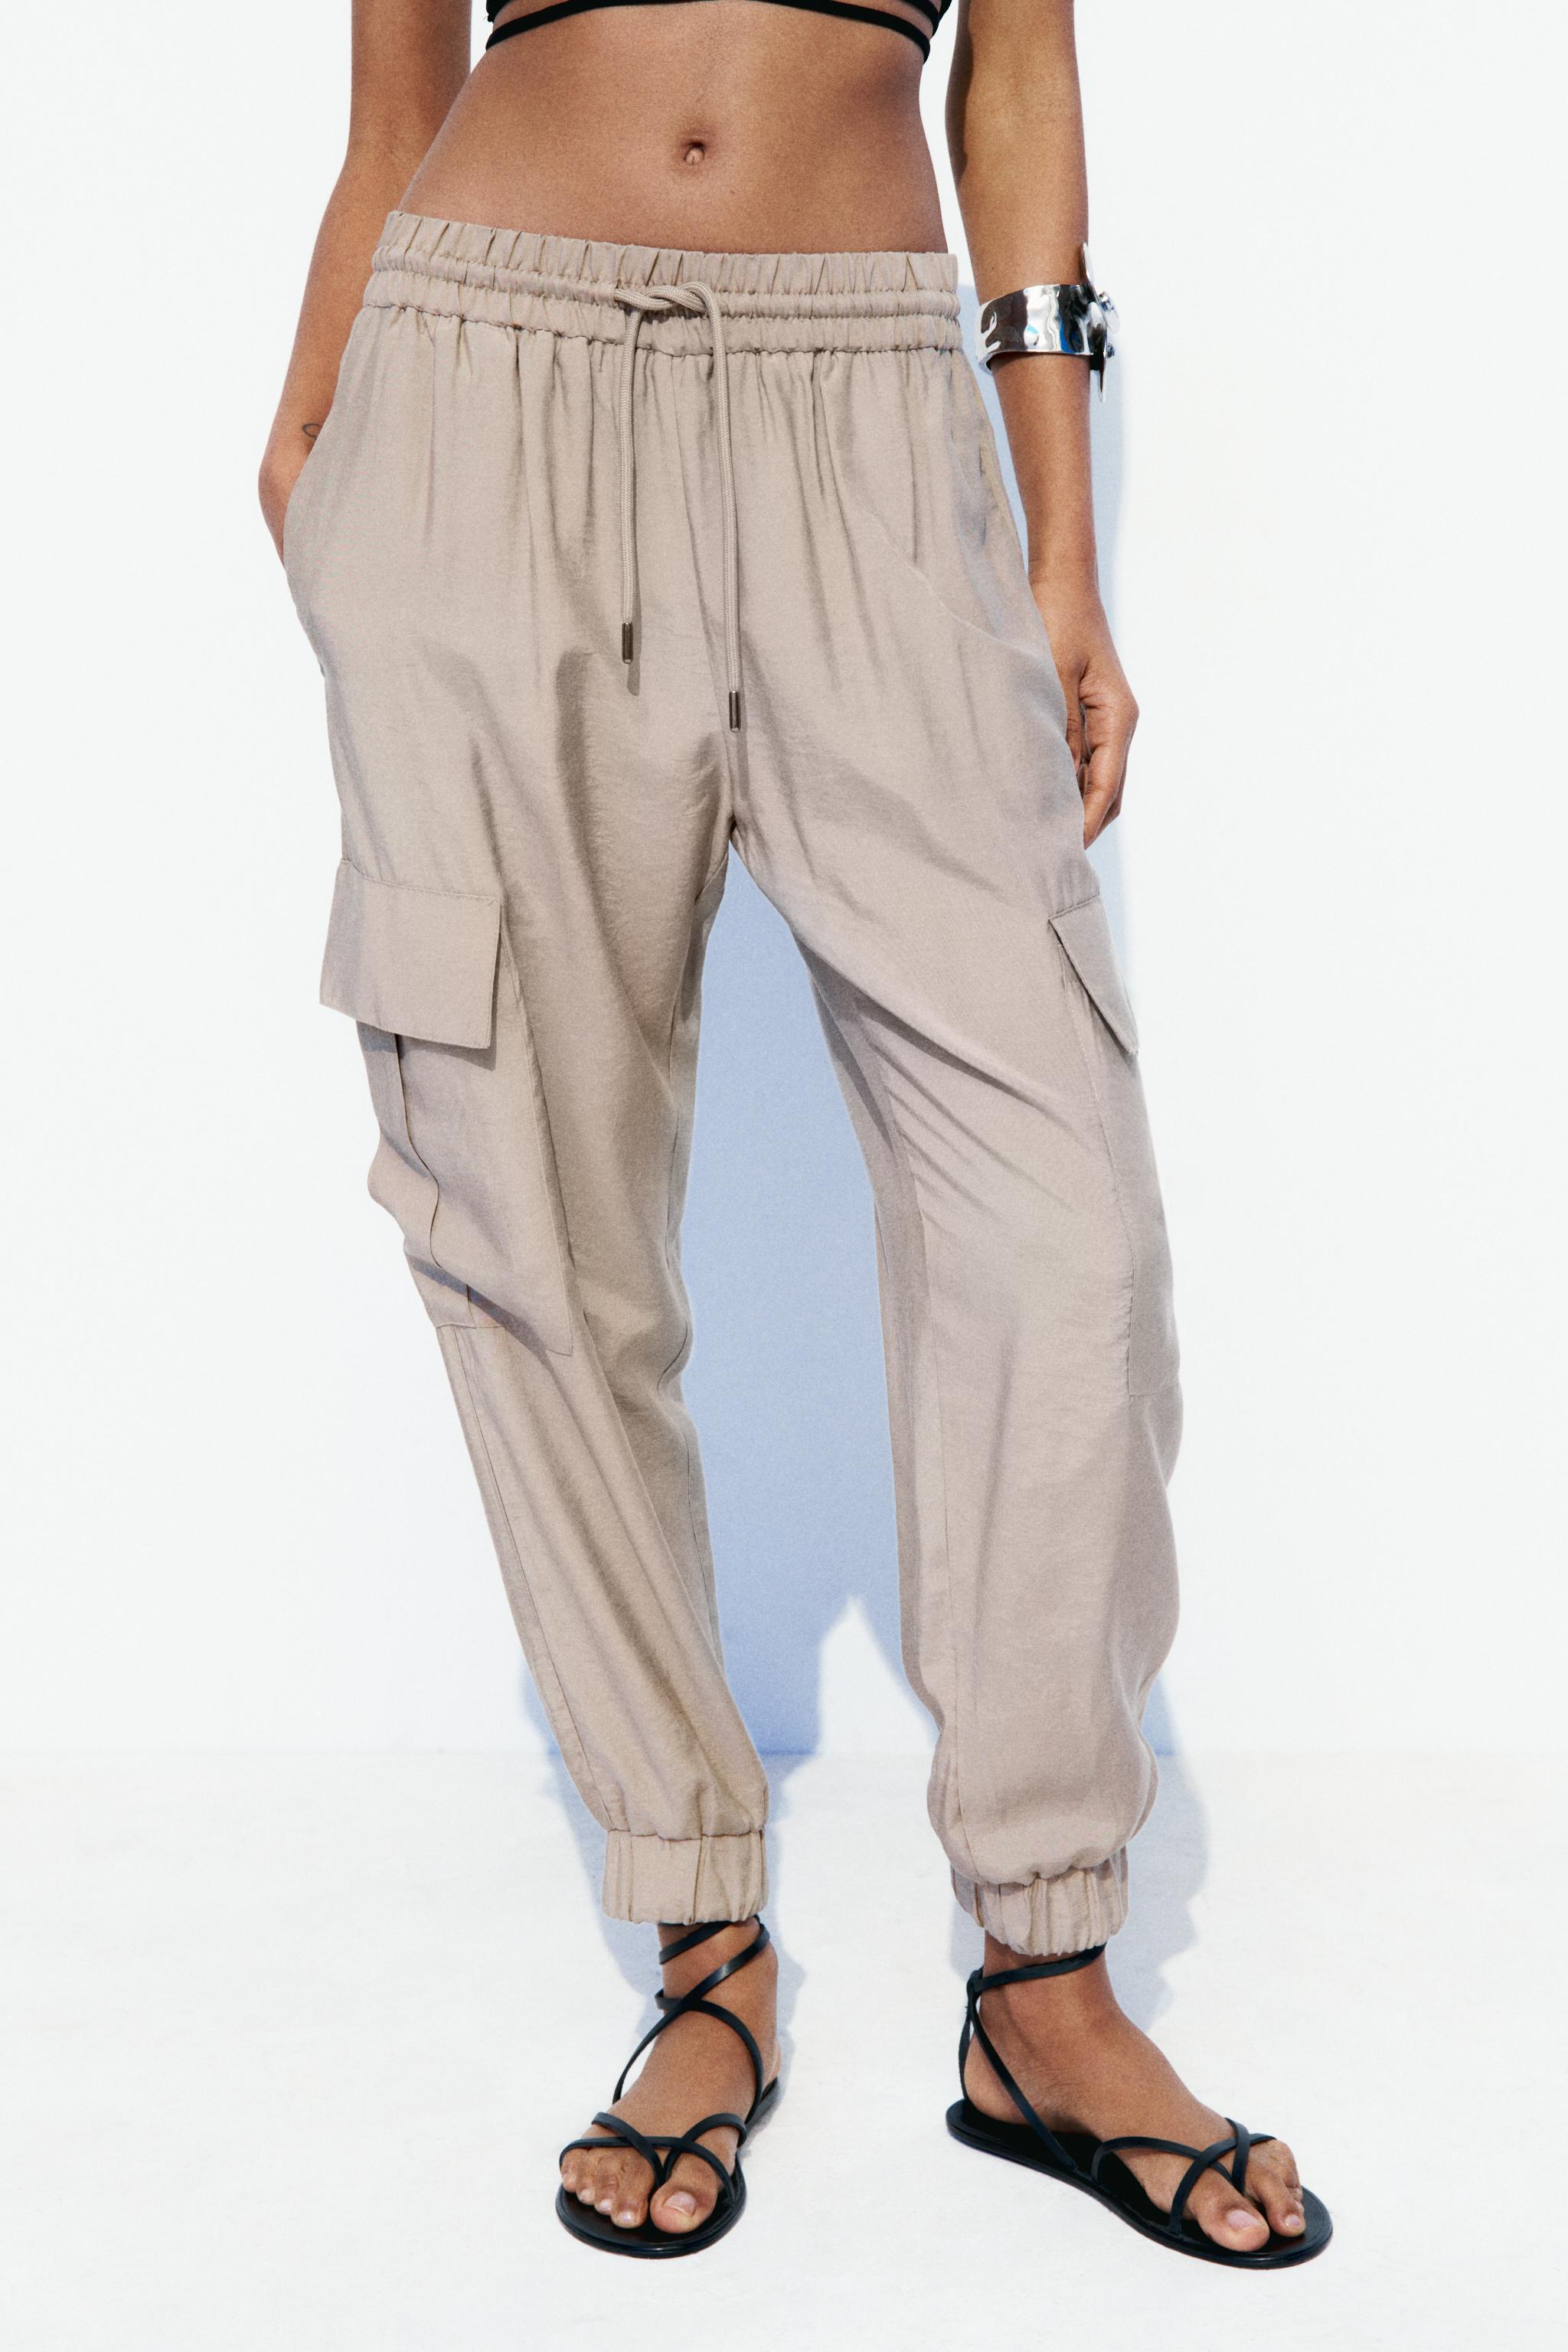 Pantalones Cargo de Mujer, Nueva Colección Online